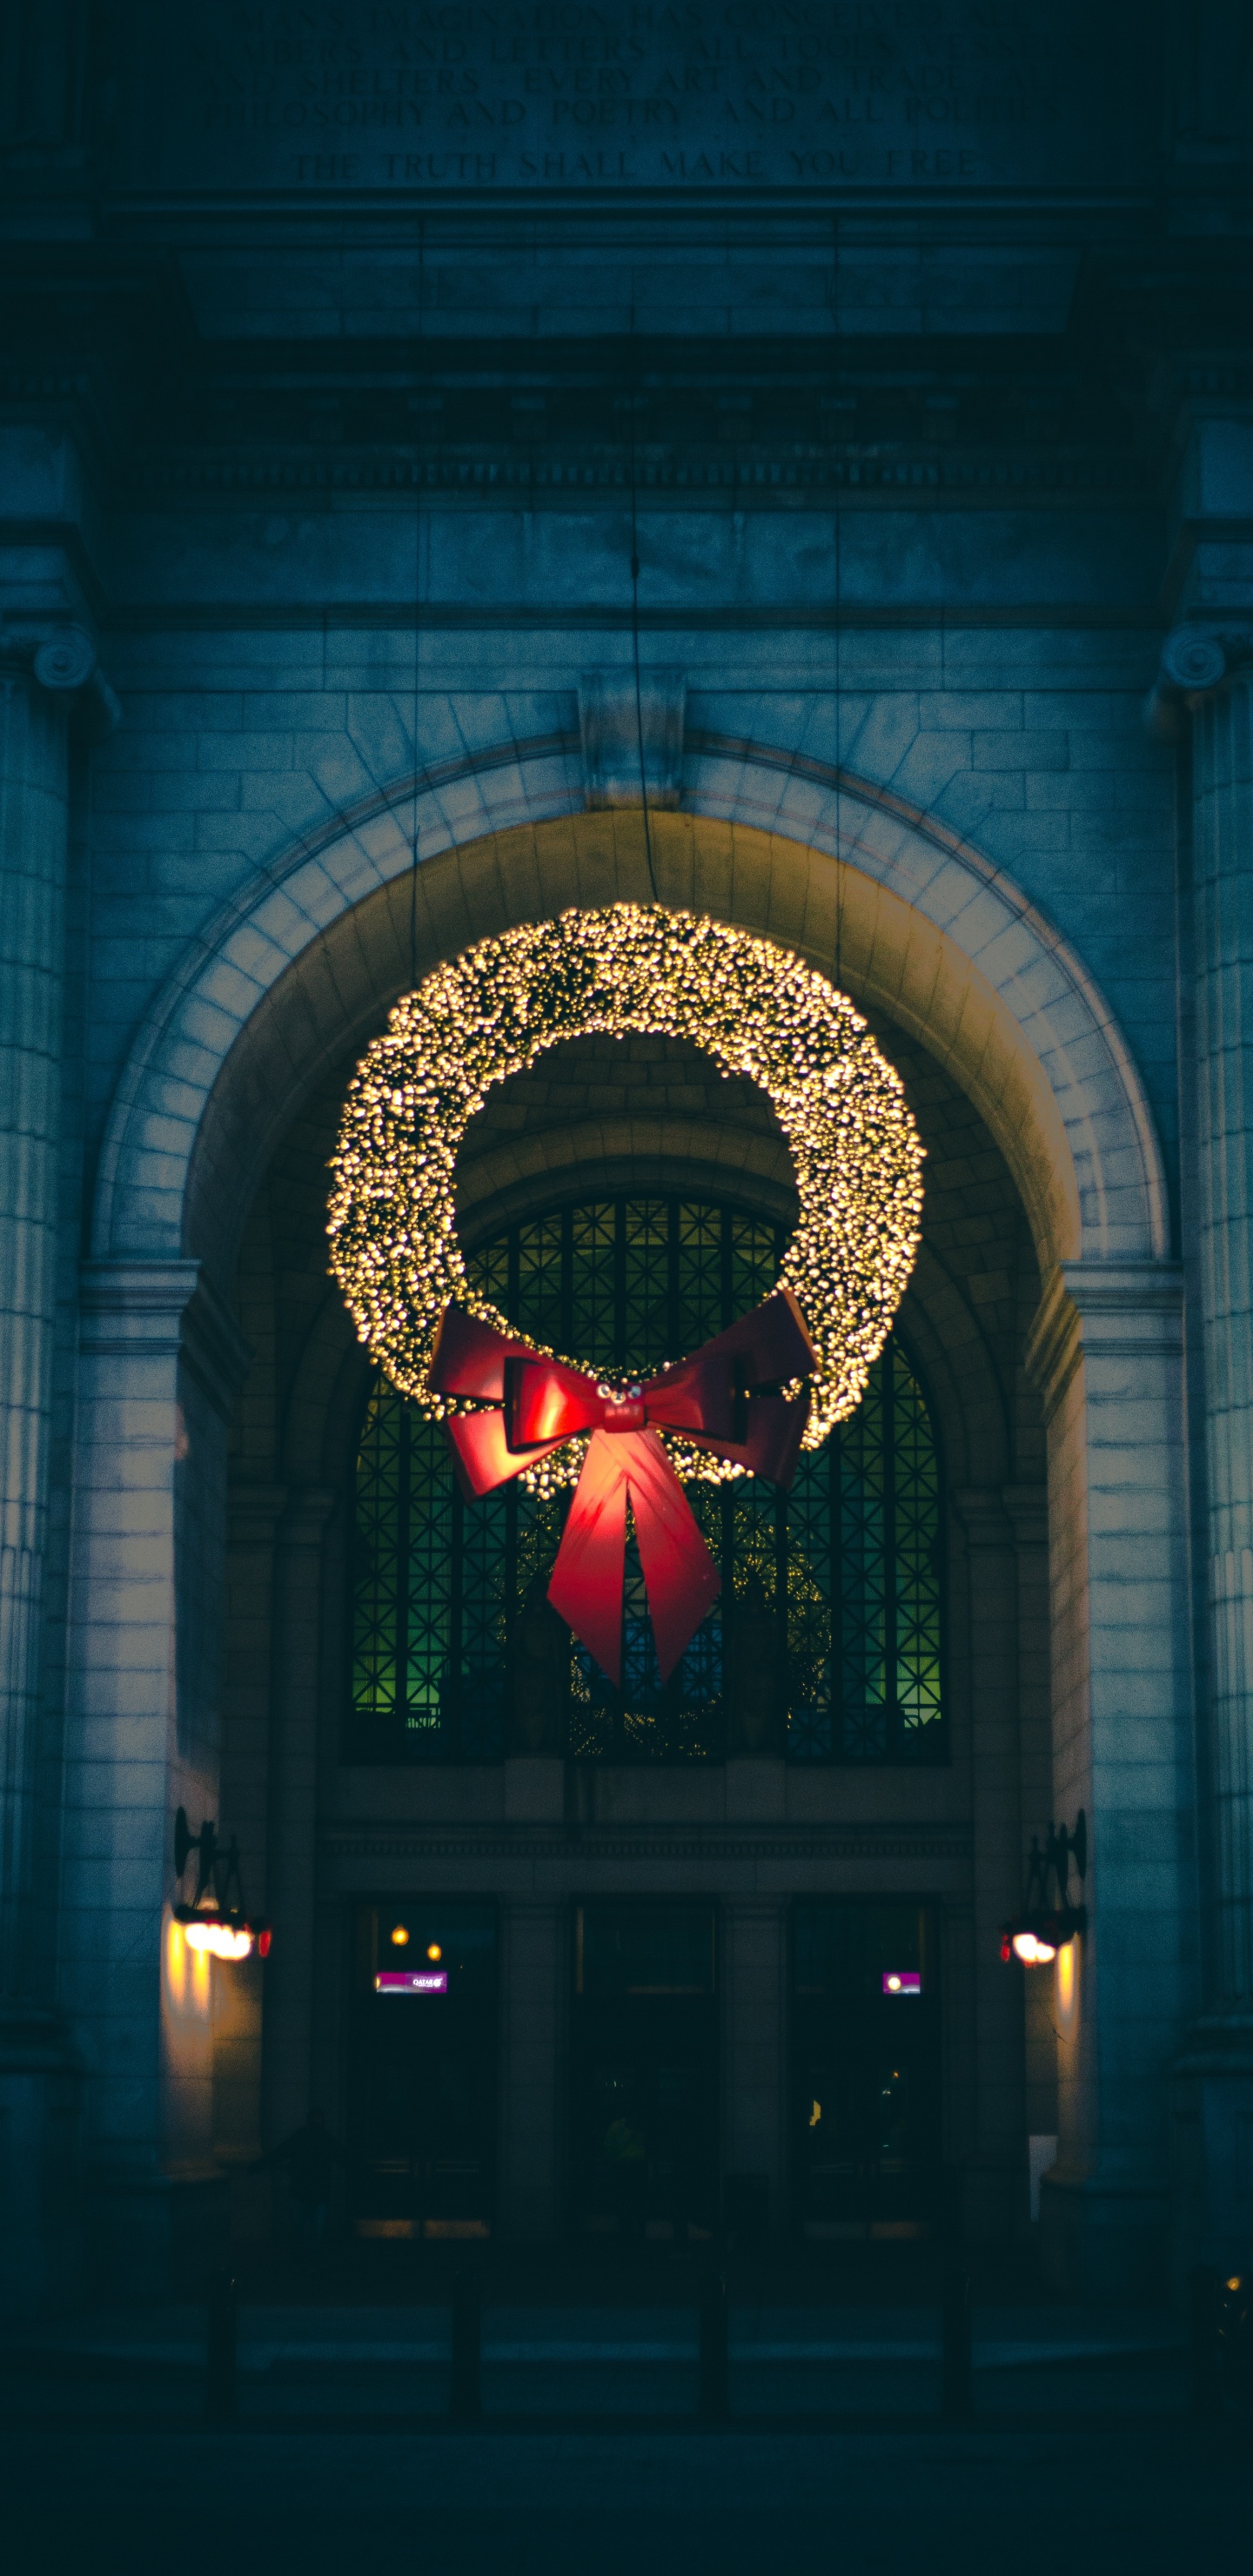 Weihnachten, Licht, Architektur, Nacht, Baum. Wallpaper in 1440x2960 Resolution